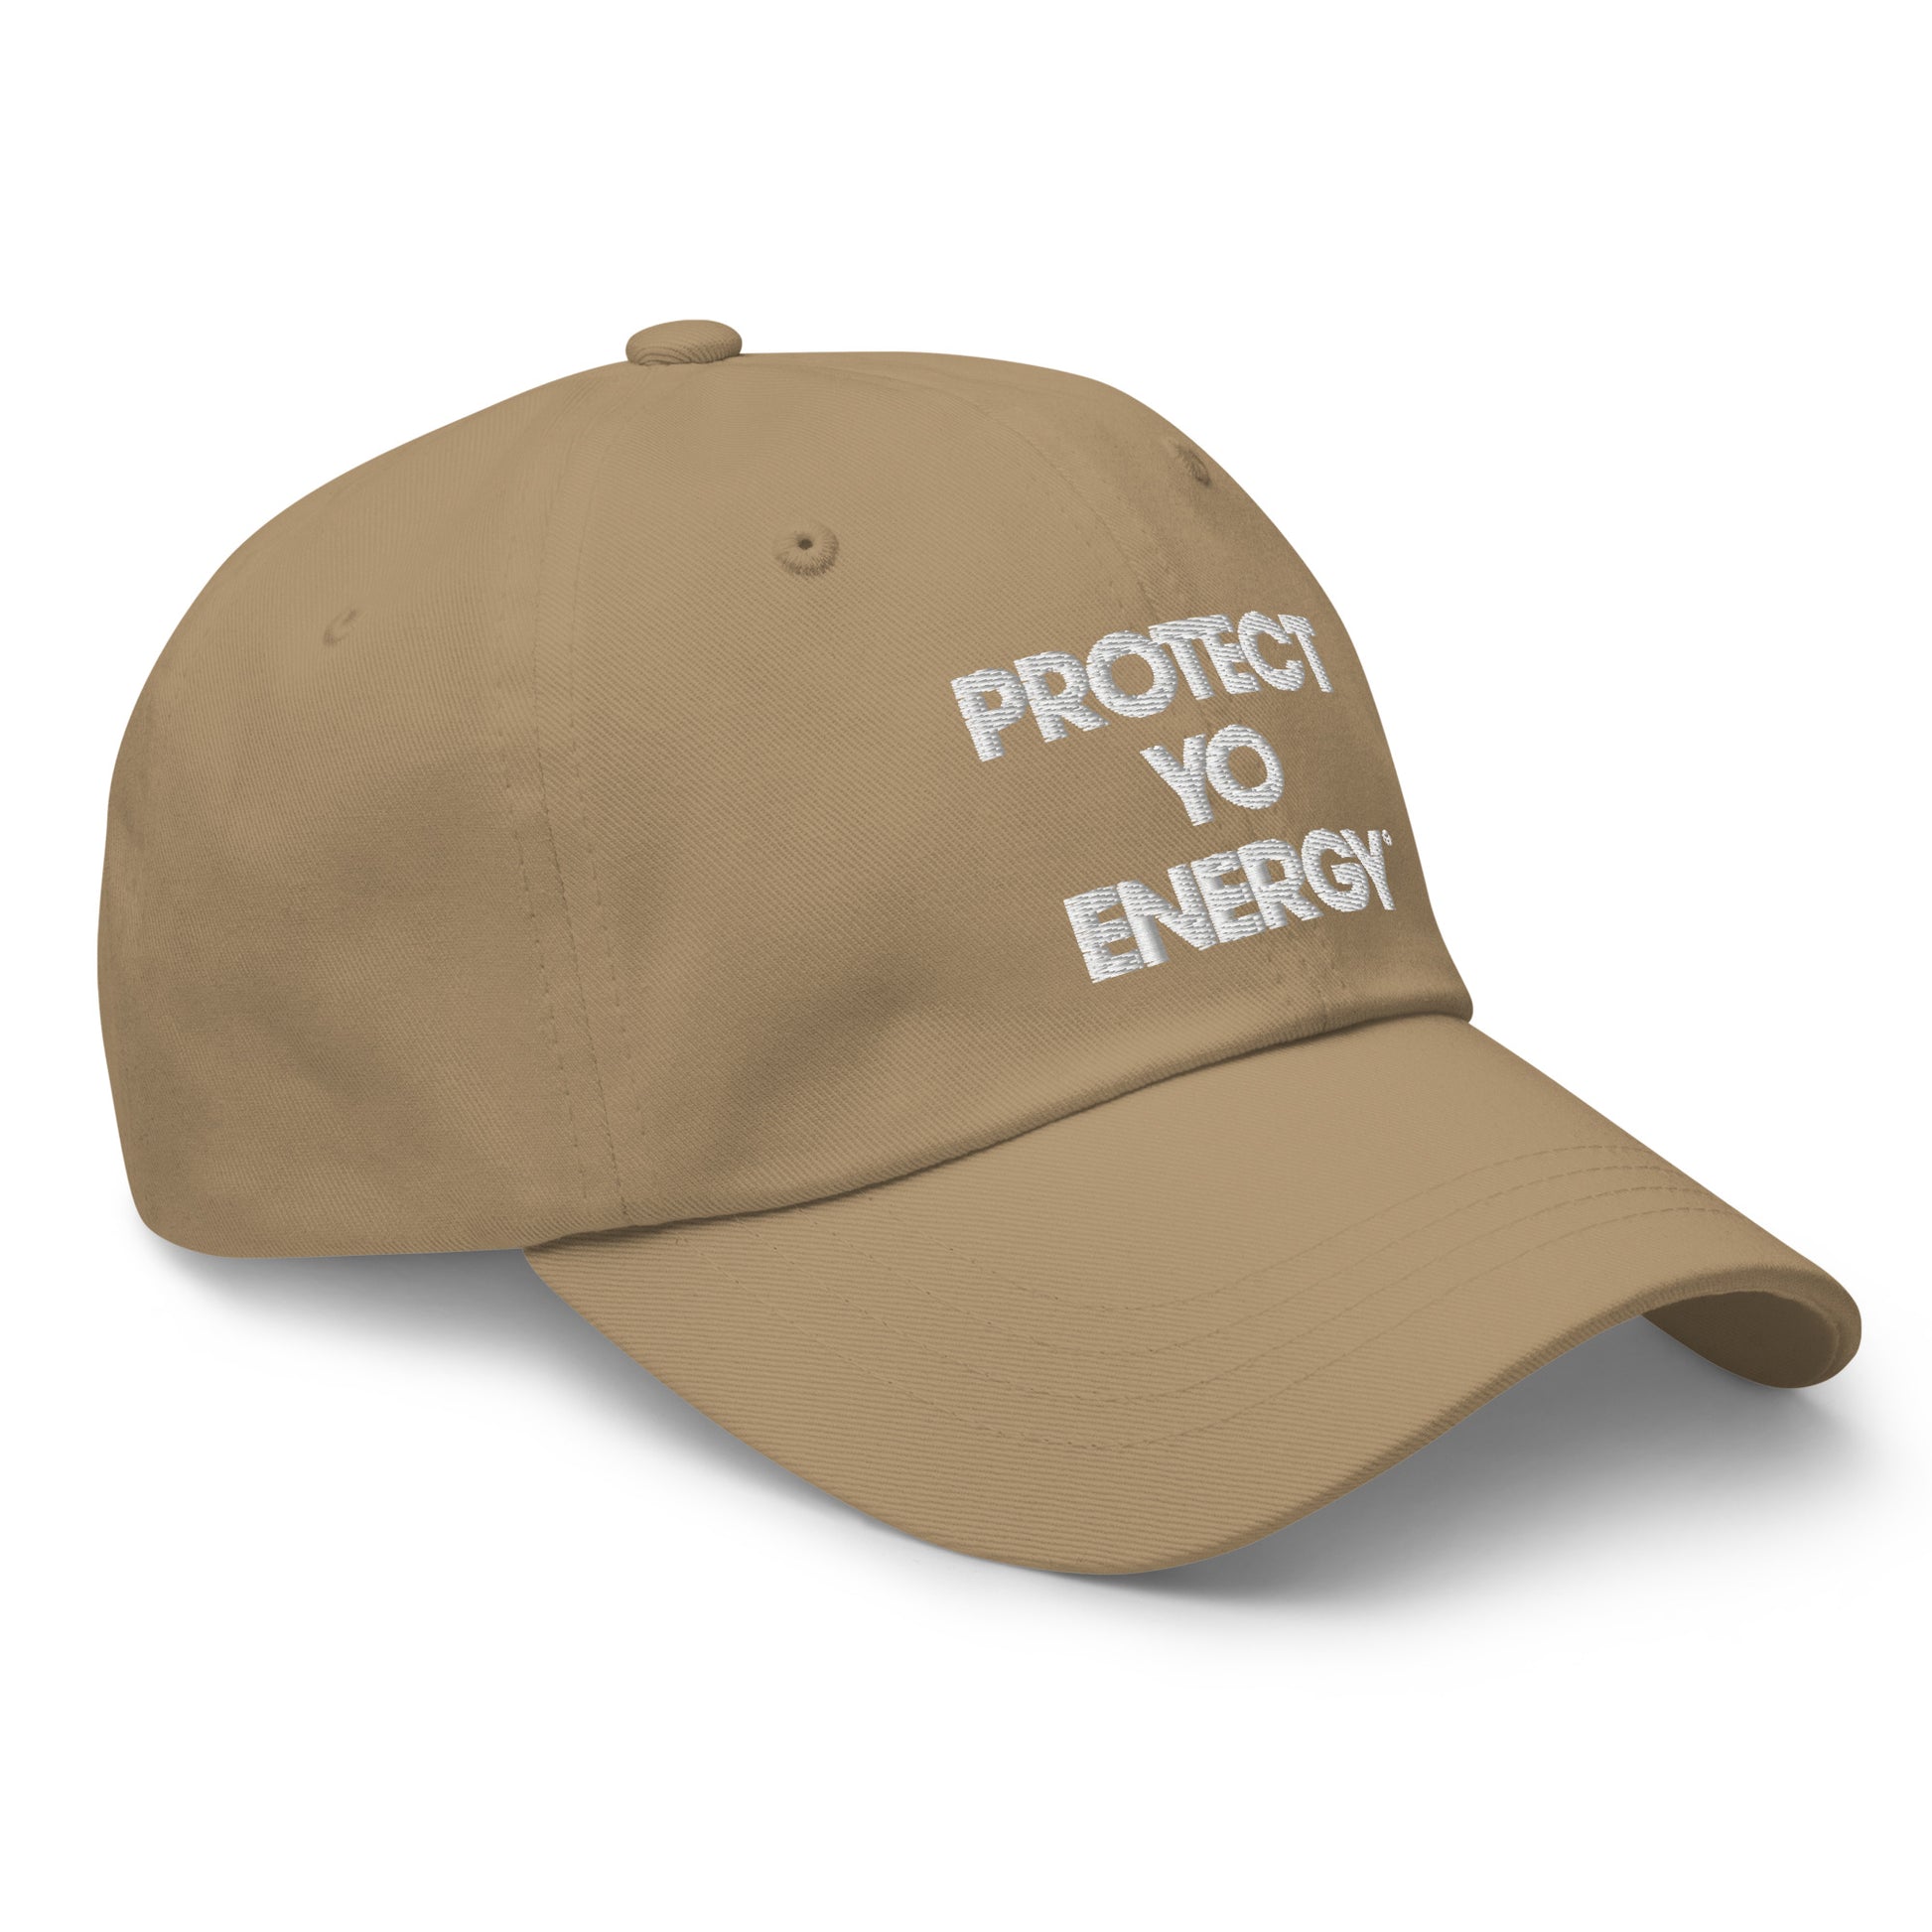 PYE Dad hat - PROTECT YO ENERGY 